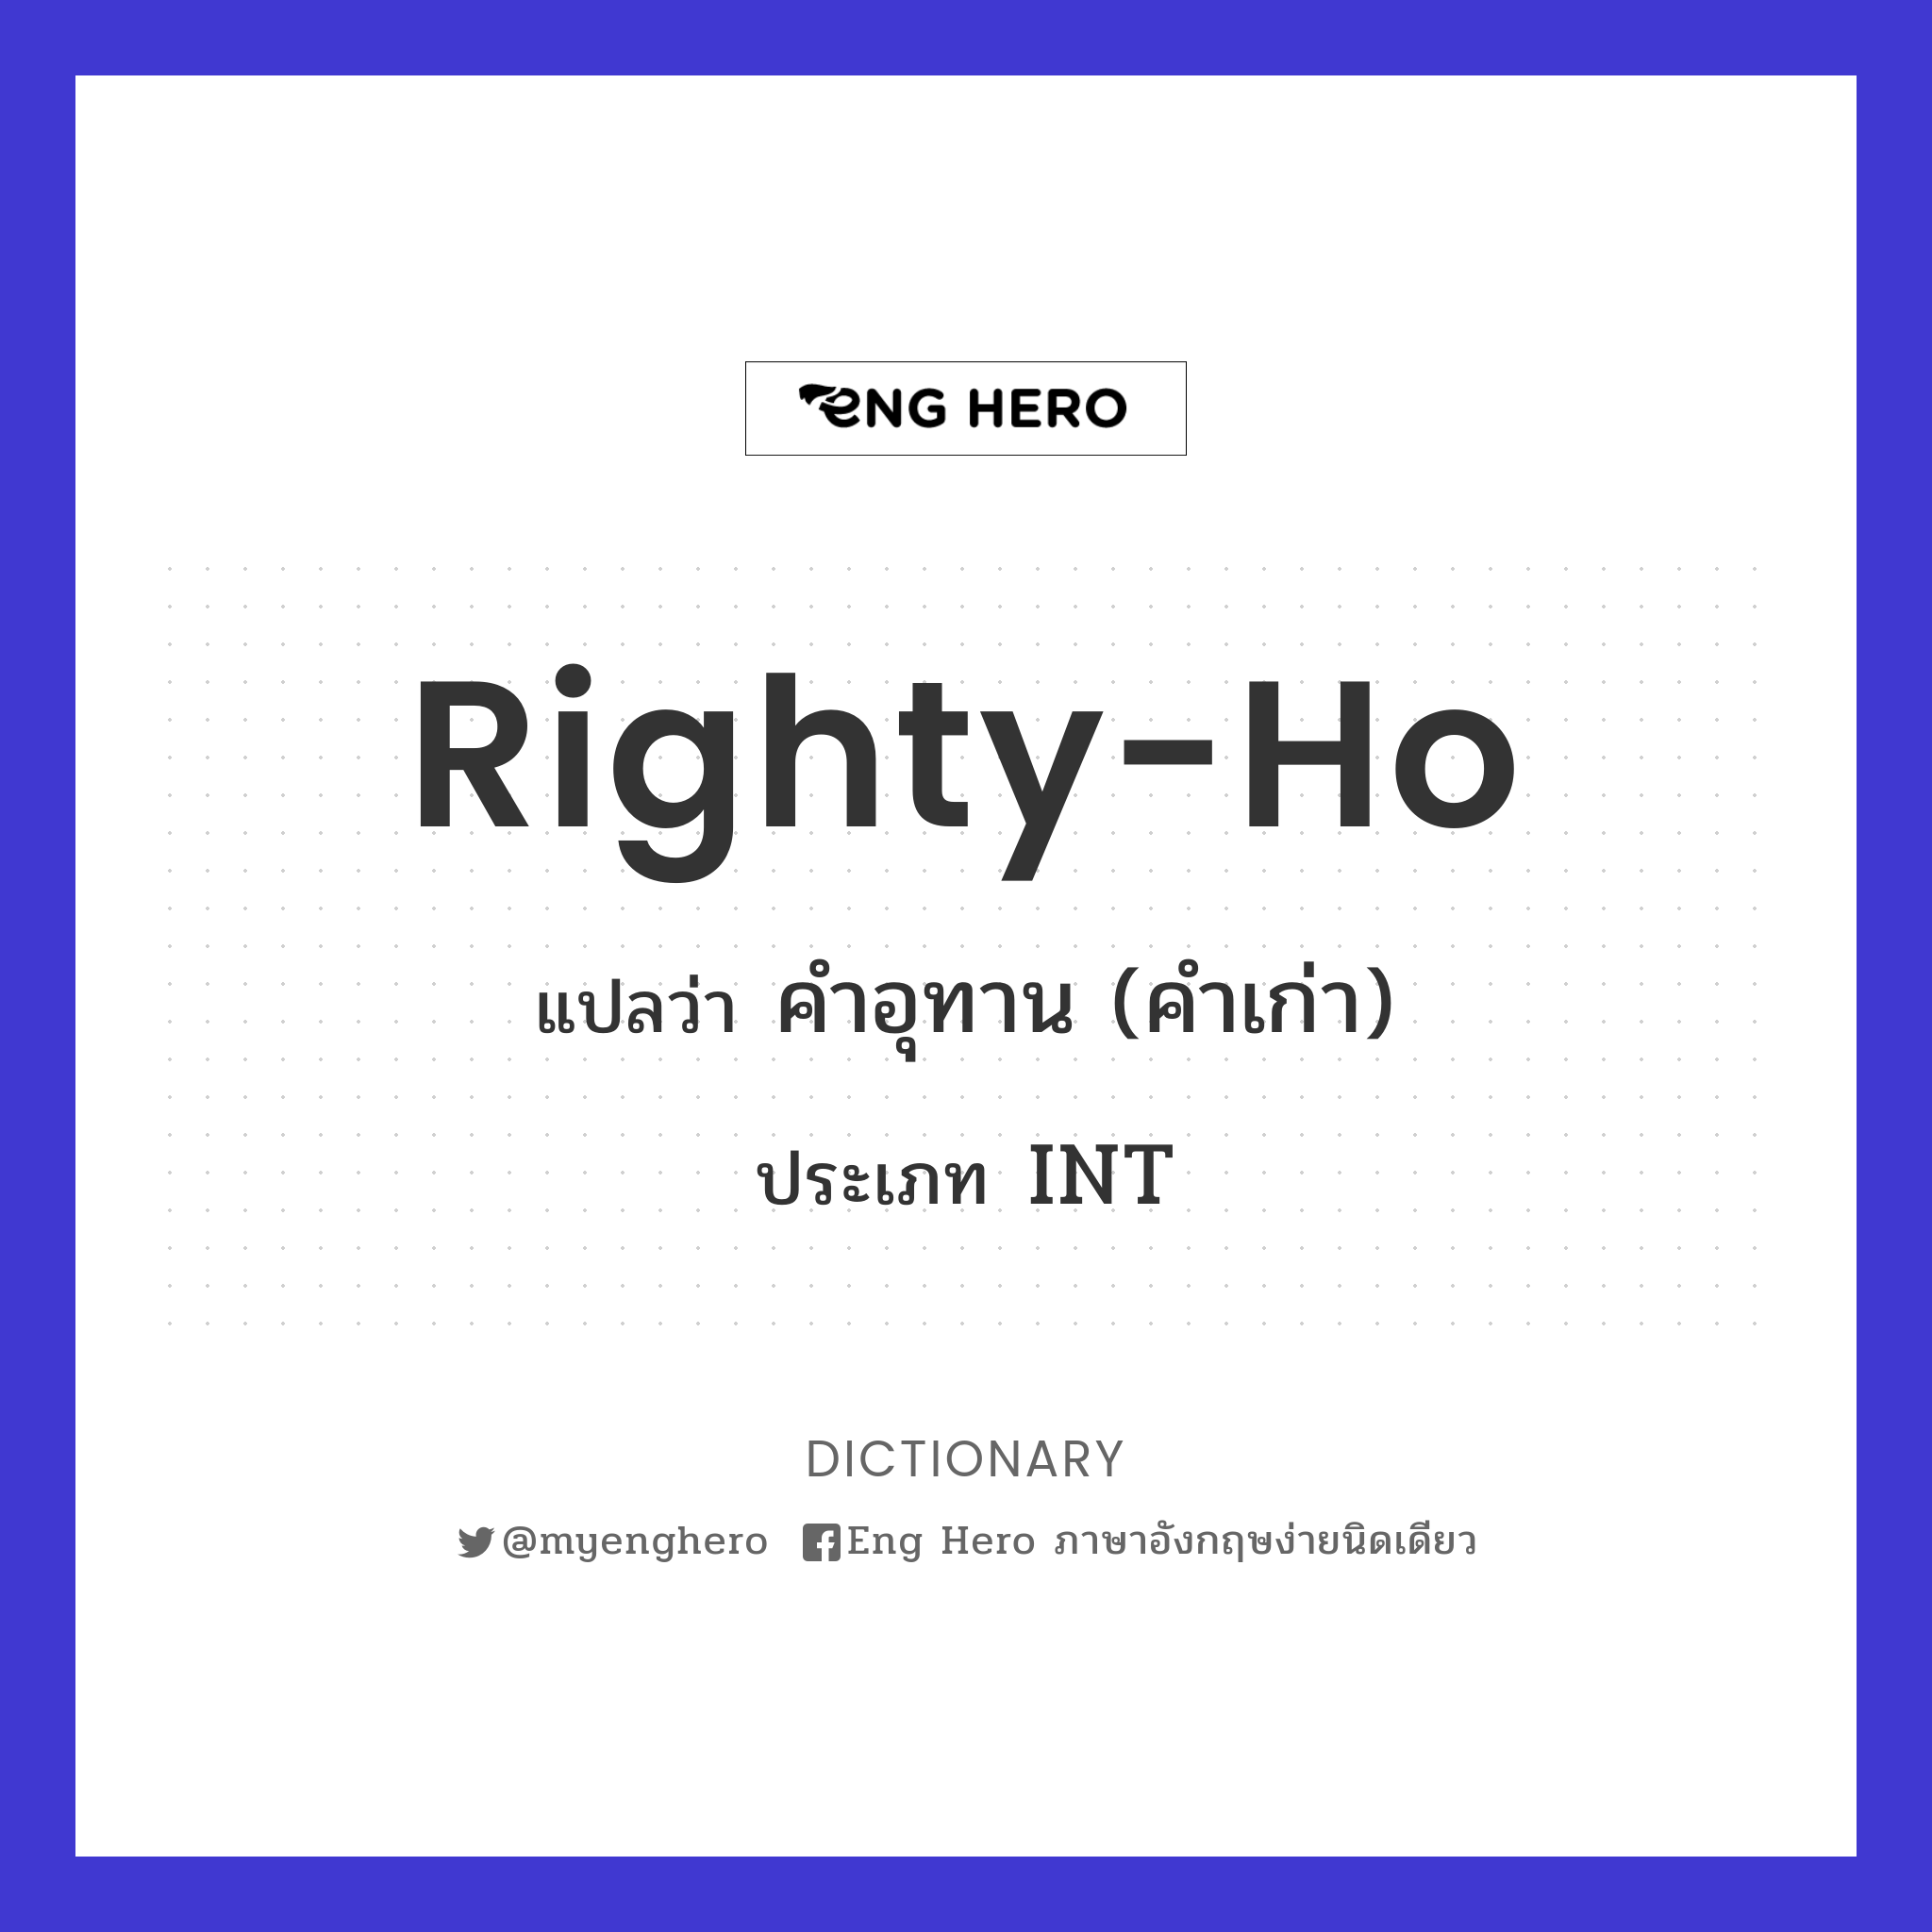 righty-ho